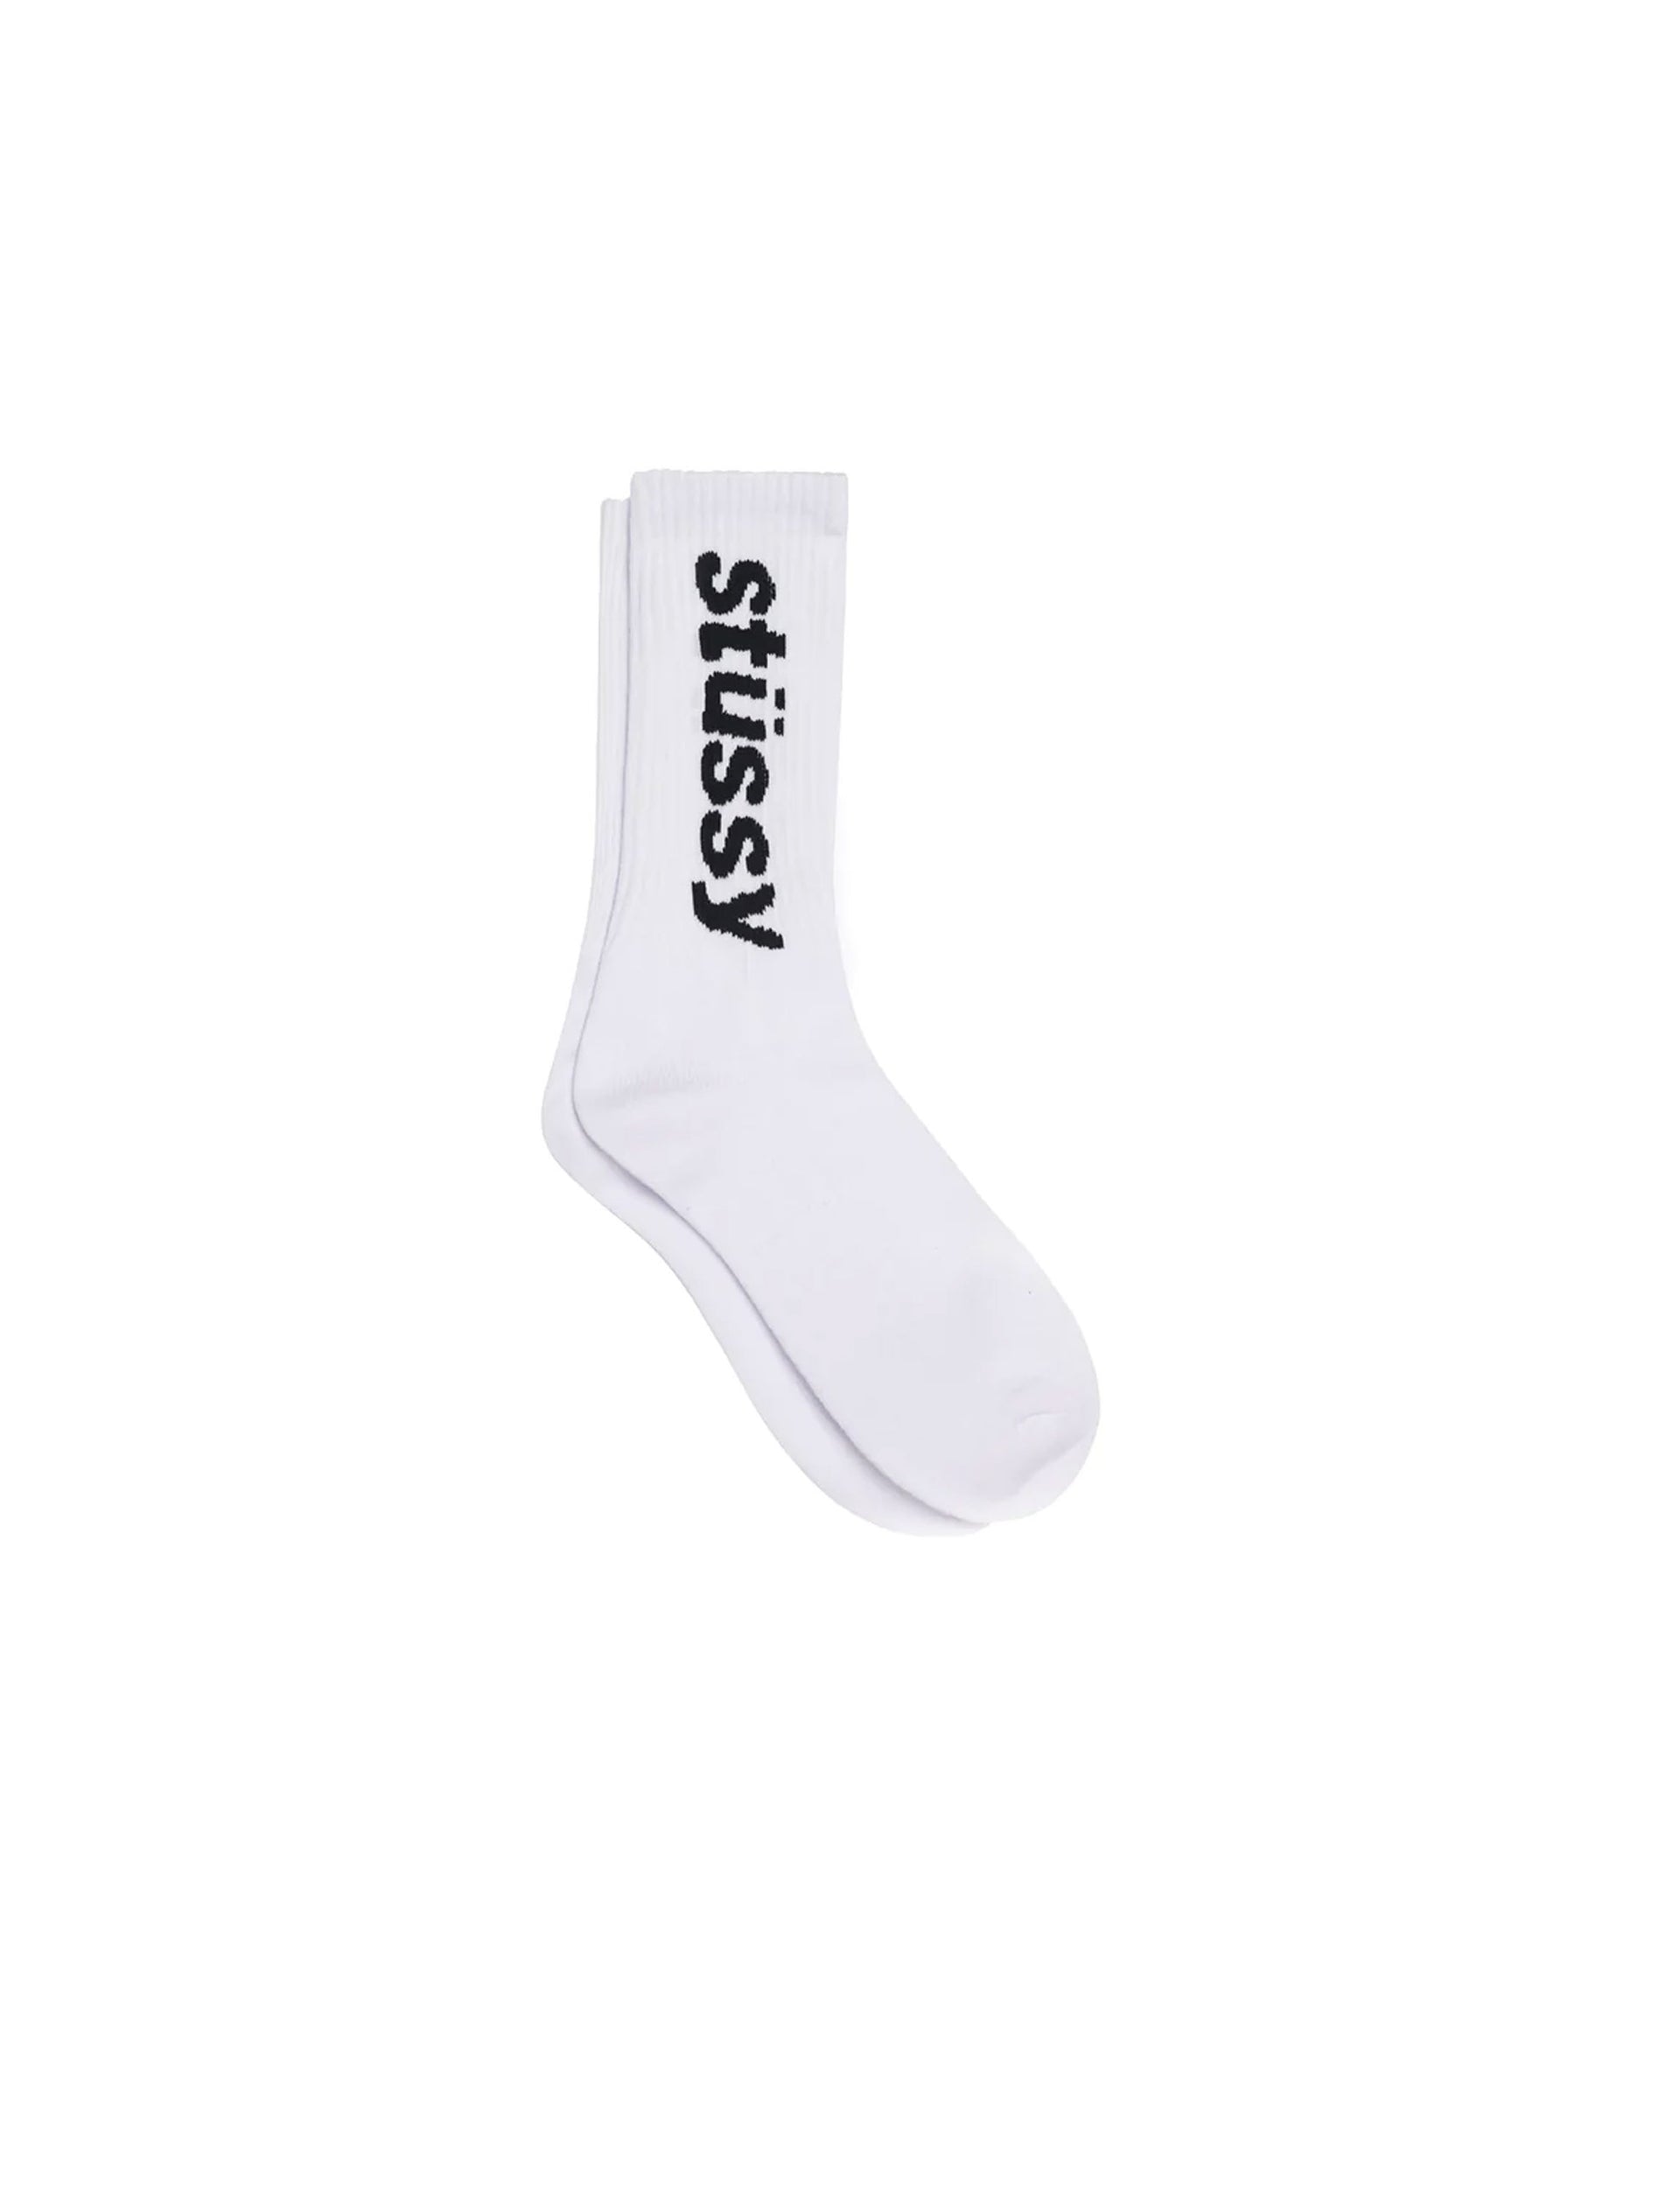 STÜSSY Helvetica Crew Socks WHITE/BLACK